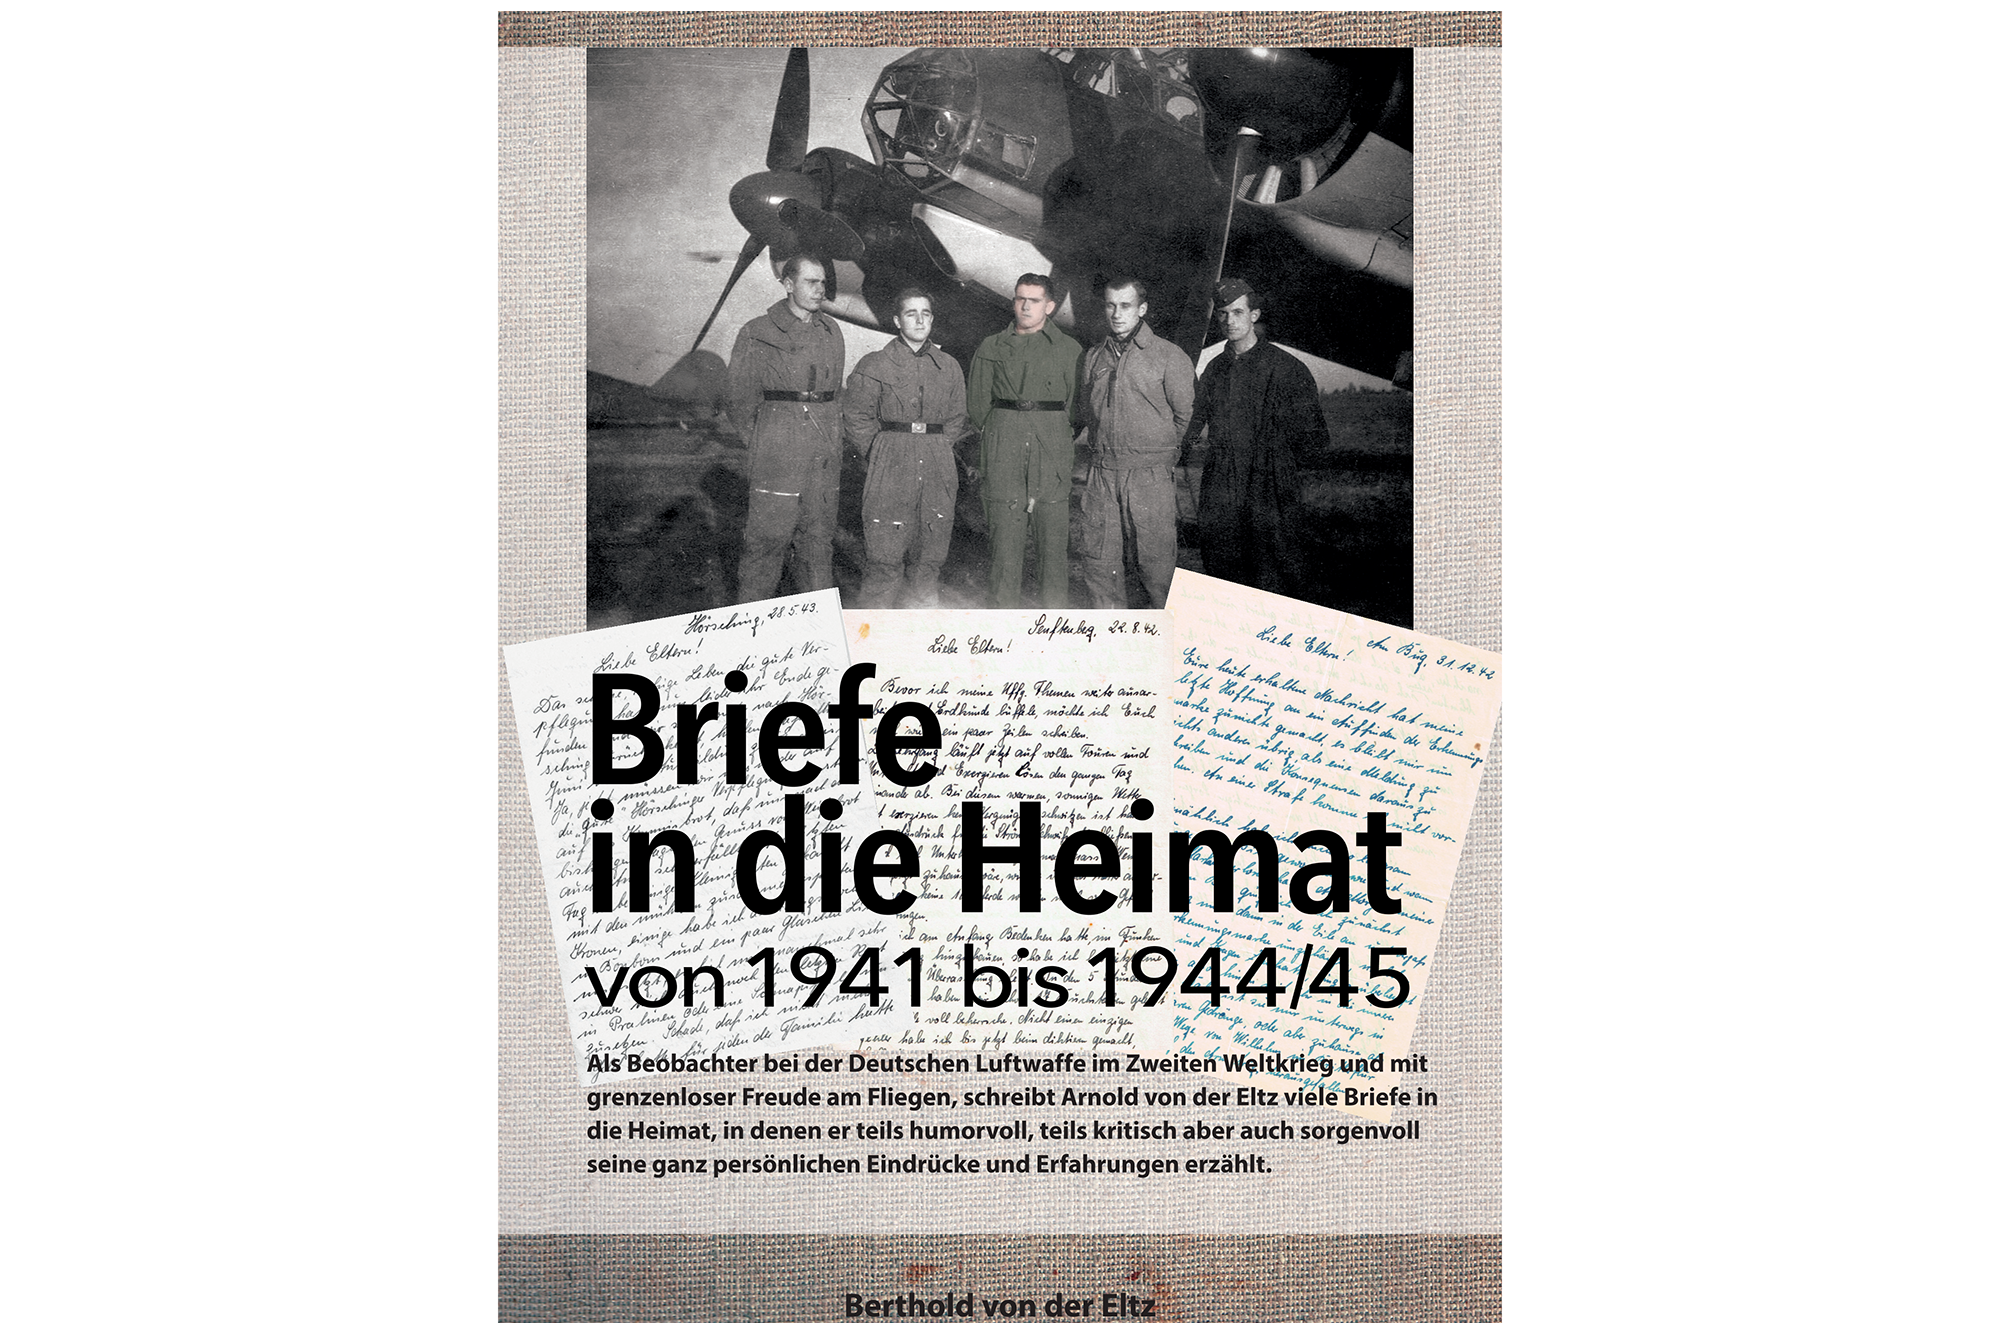 Berthold von der Eltz / Briefe in die Heimat von 1942 bis 1944/45